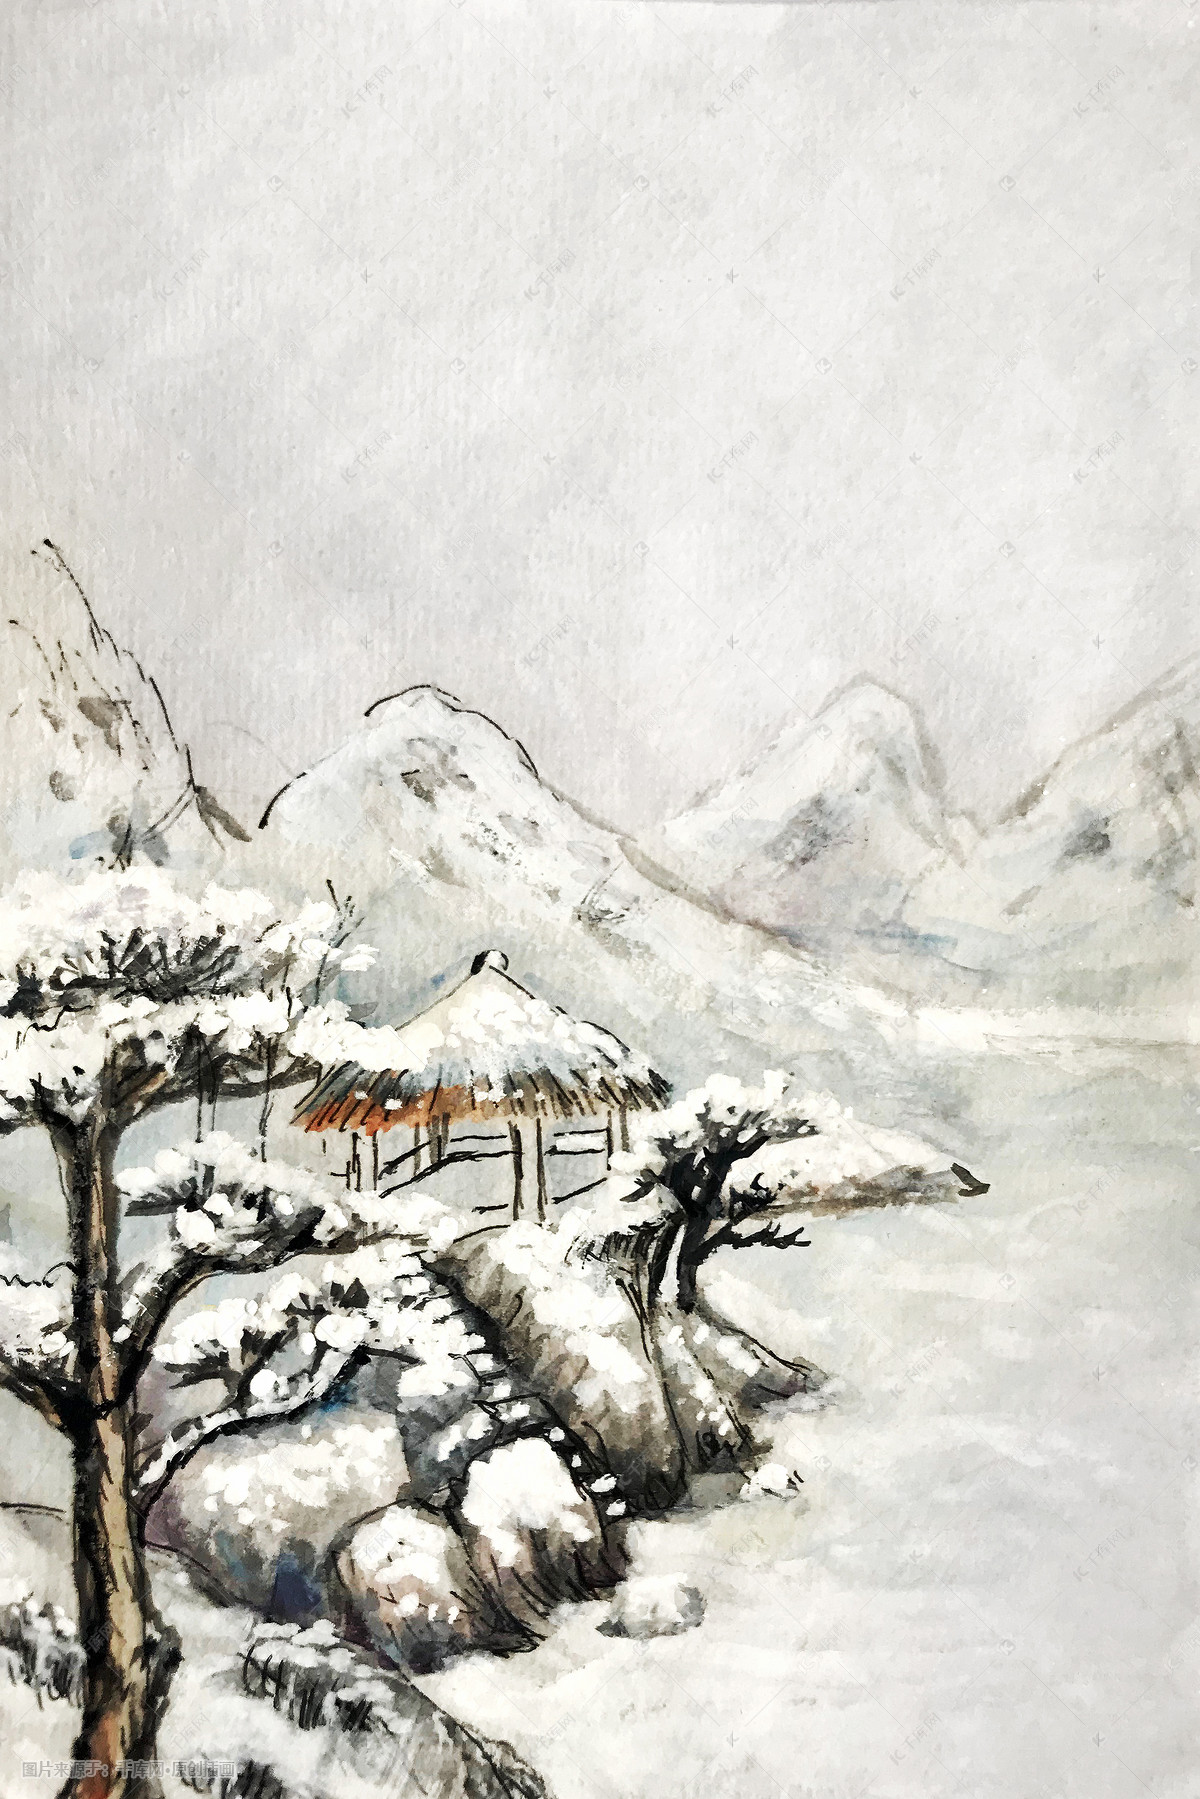 高清手绘冬天雪景素材-快设网-设计师专业导航网站